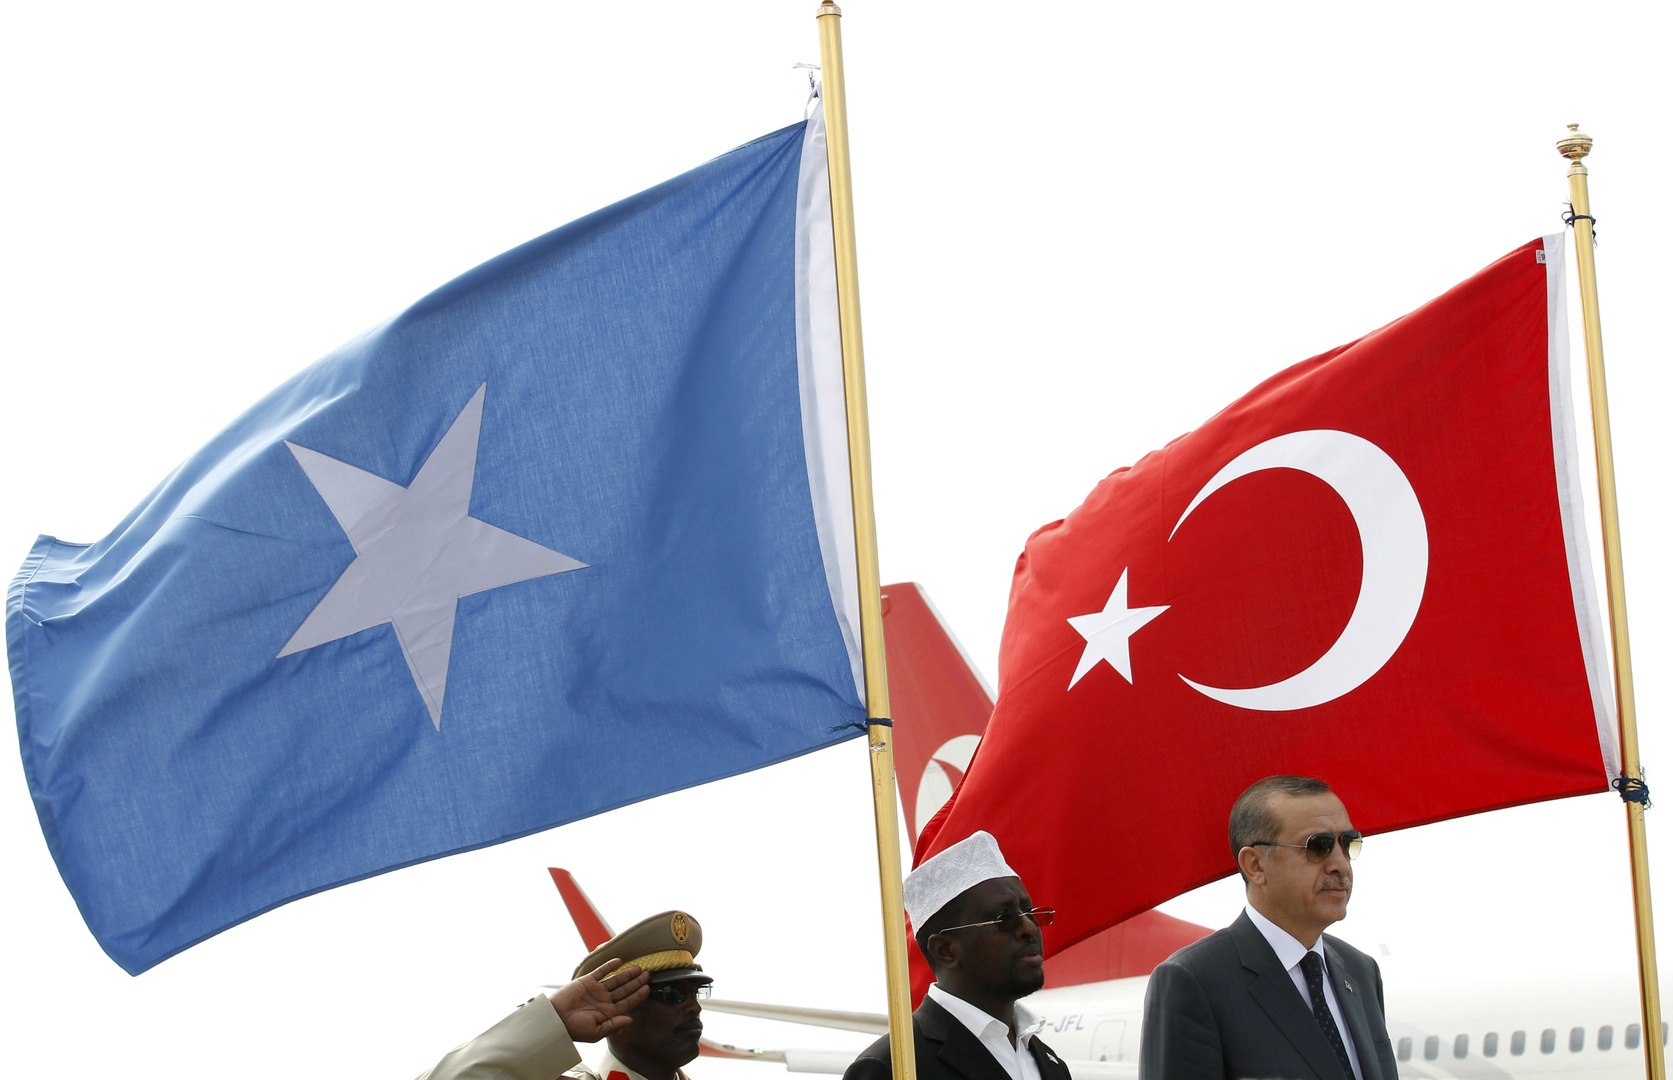 Somali’ye 1000 terörist göndermeye hazırlanıyor